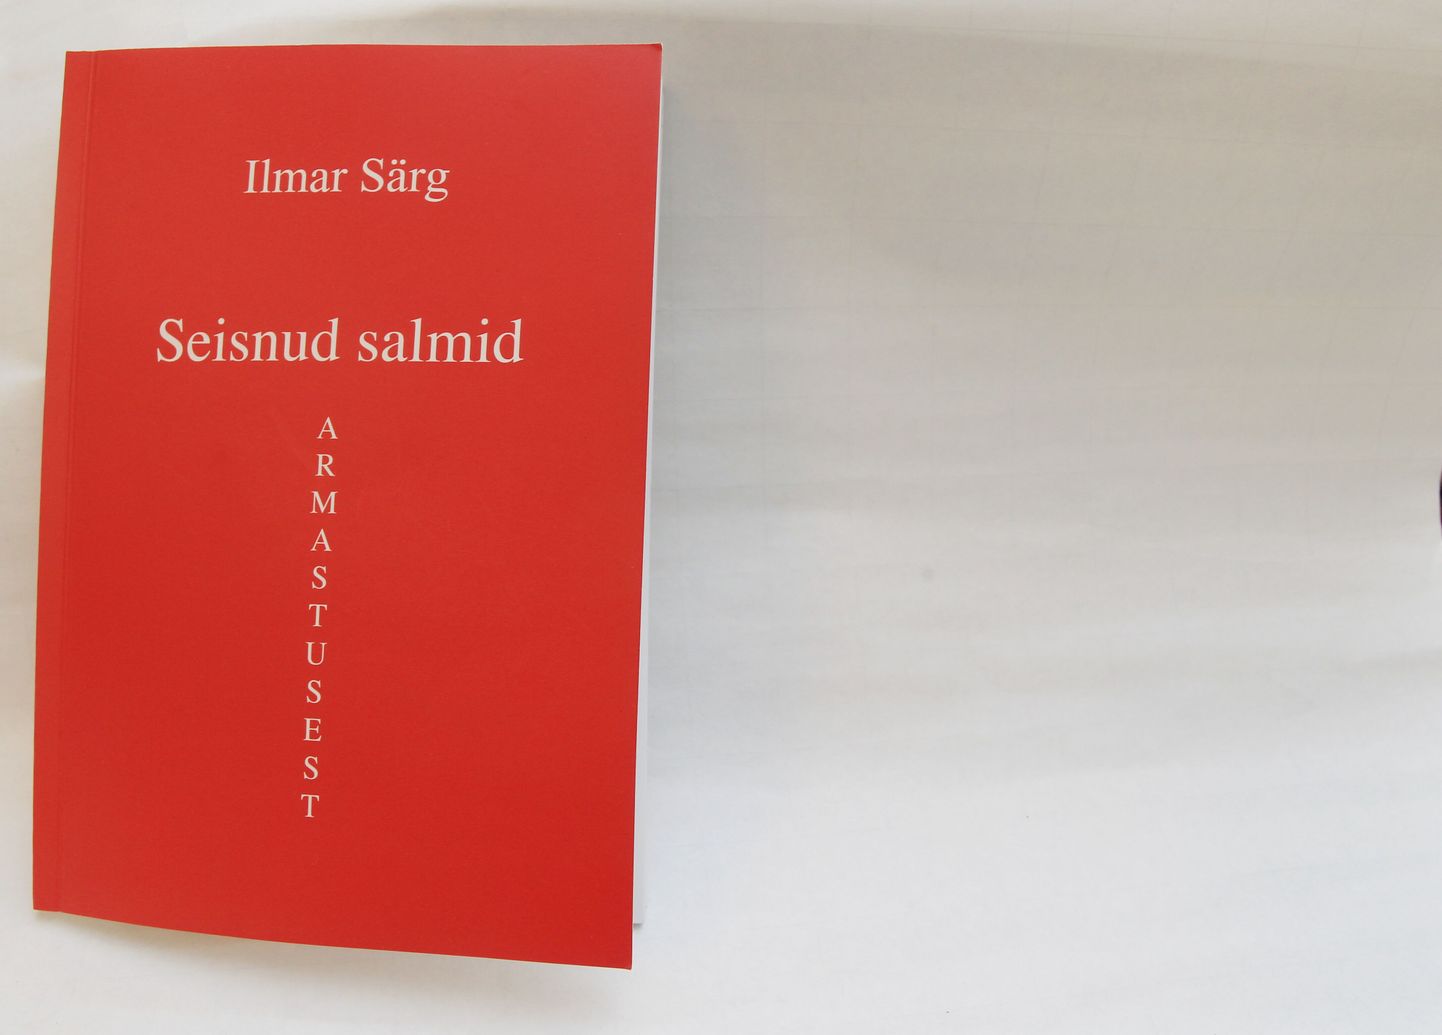 Ilmar Särg tõi lugejate ette oma luulekogu "Seisnud salmid".